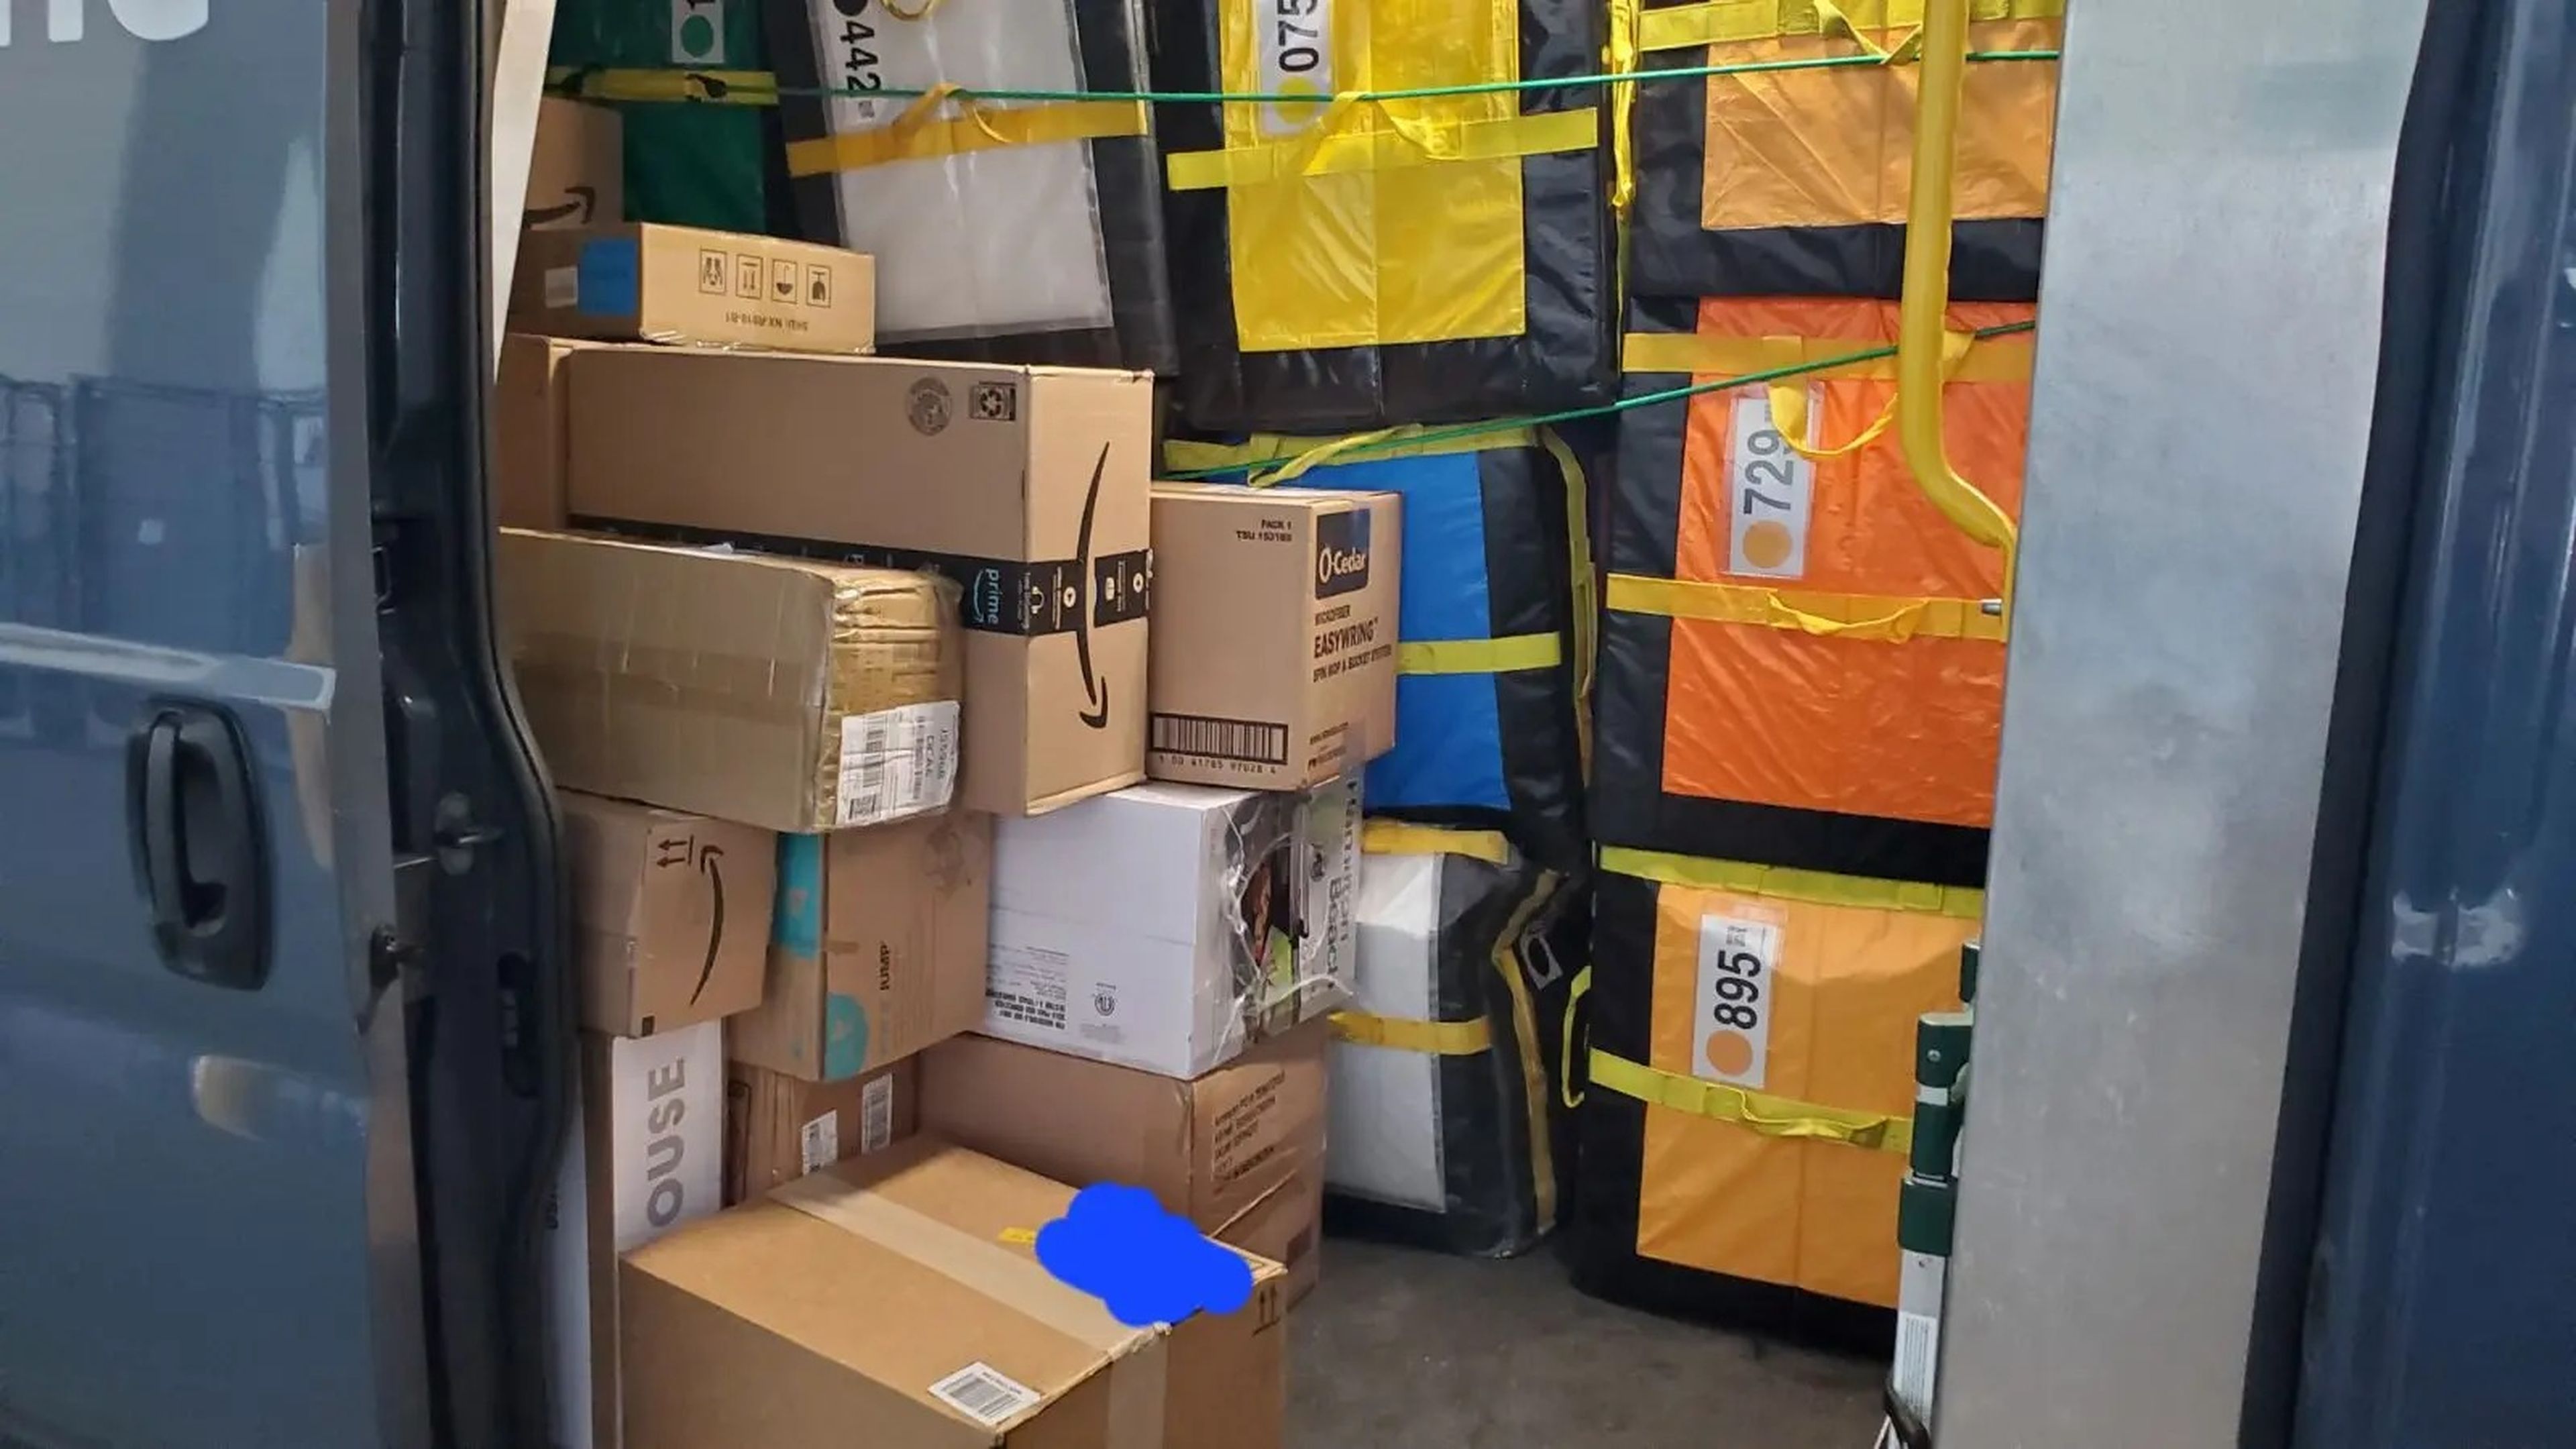 Los repartidores se enfrentan a montañas de paquetes y a largos turnos para asegurarse de que las entregas llegan a tiempo durante la temporada del Prime Day de Amazon.